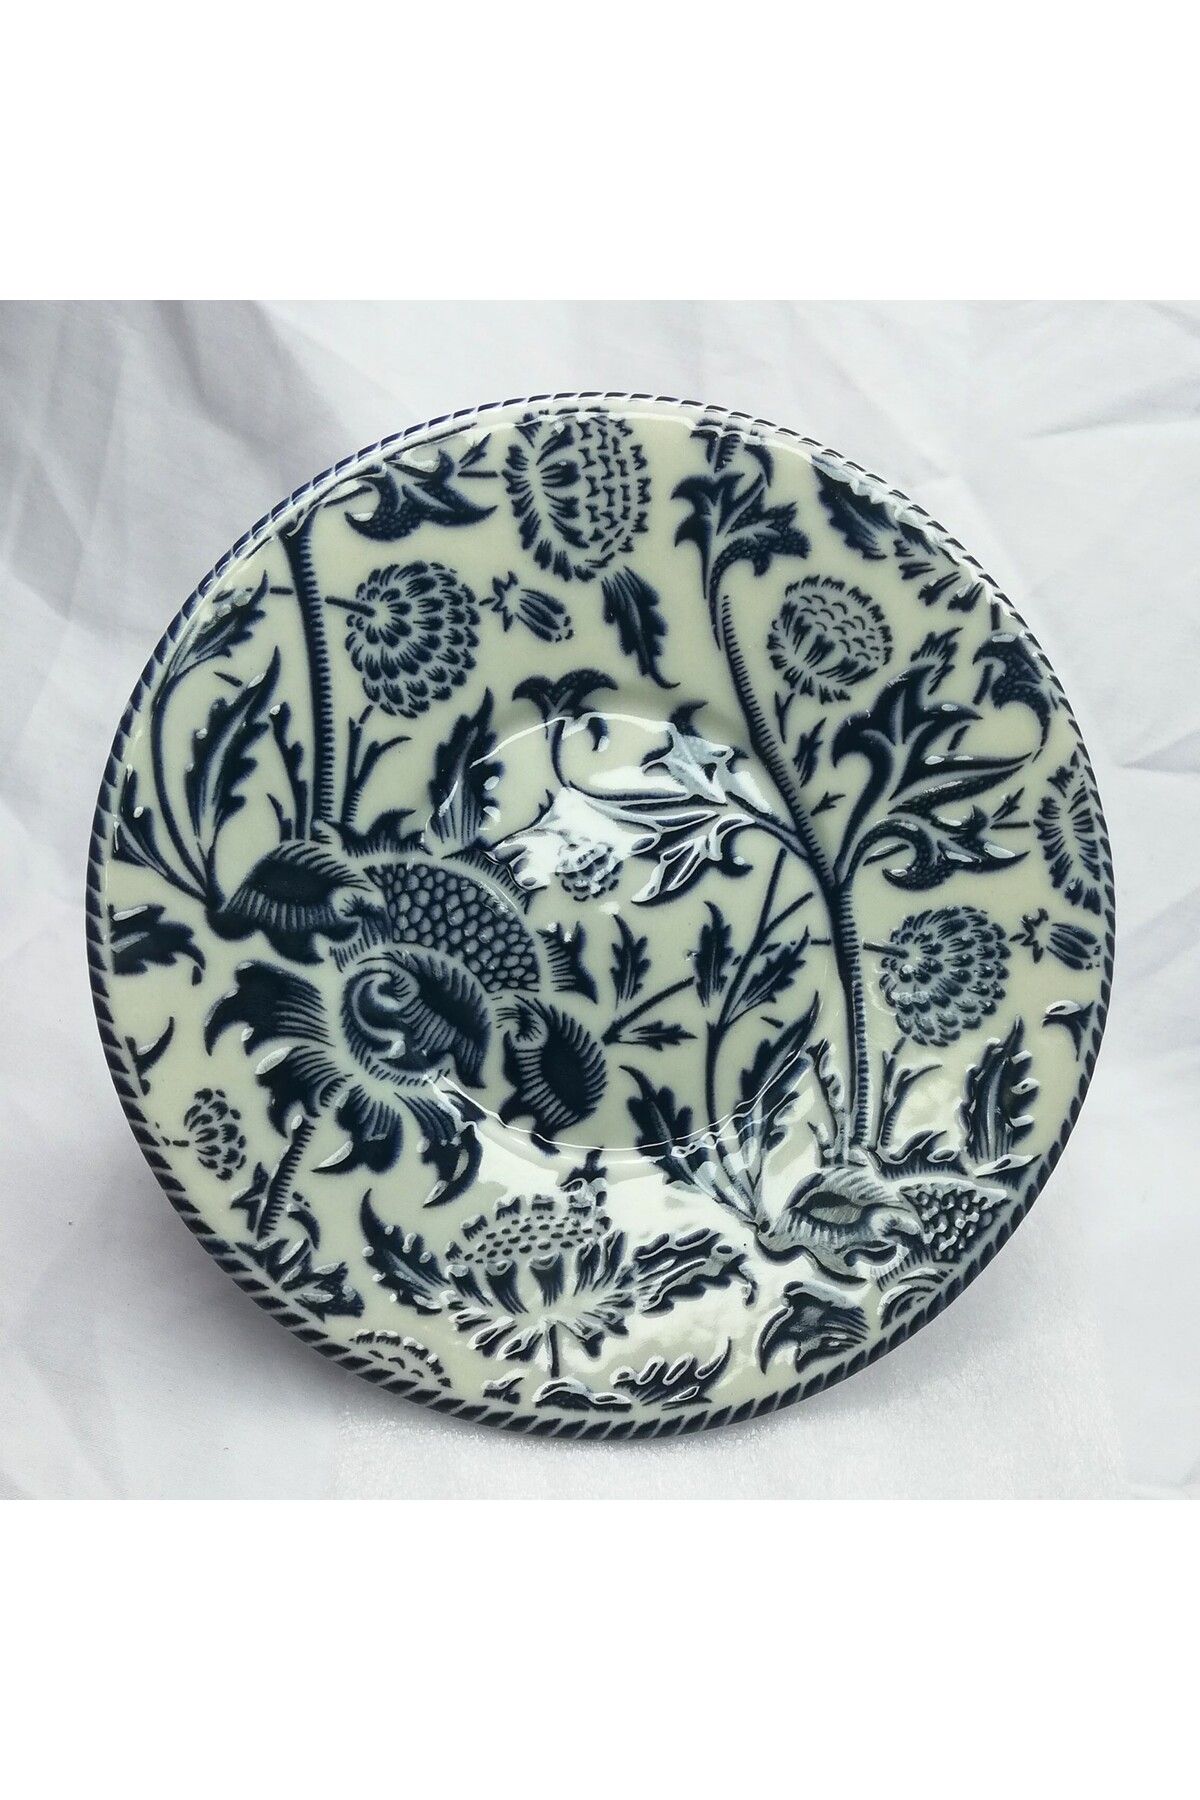 SARE Porselen Çay Tabağı Mavi Çiçek Desenli Porselen Bardak Altlığı (6'LI)